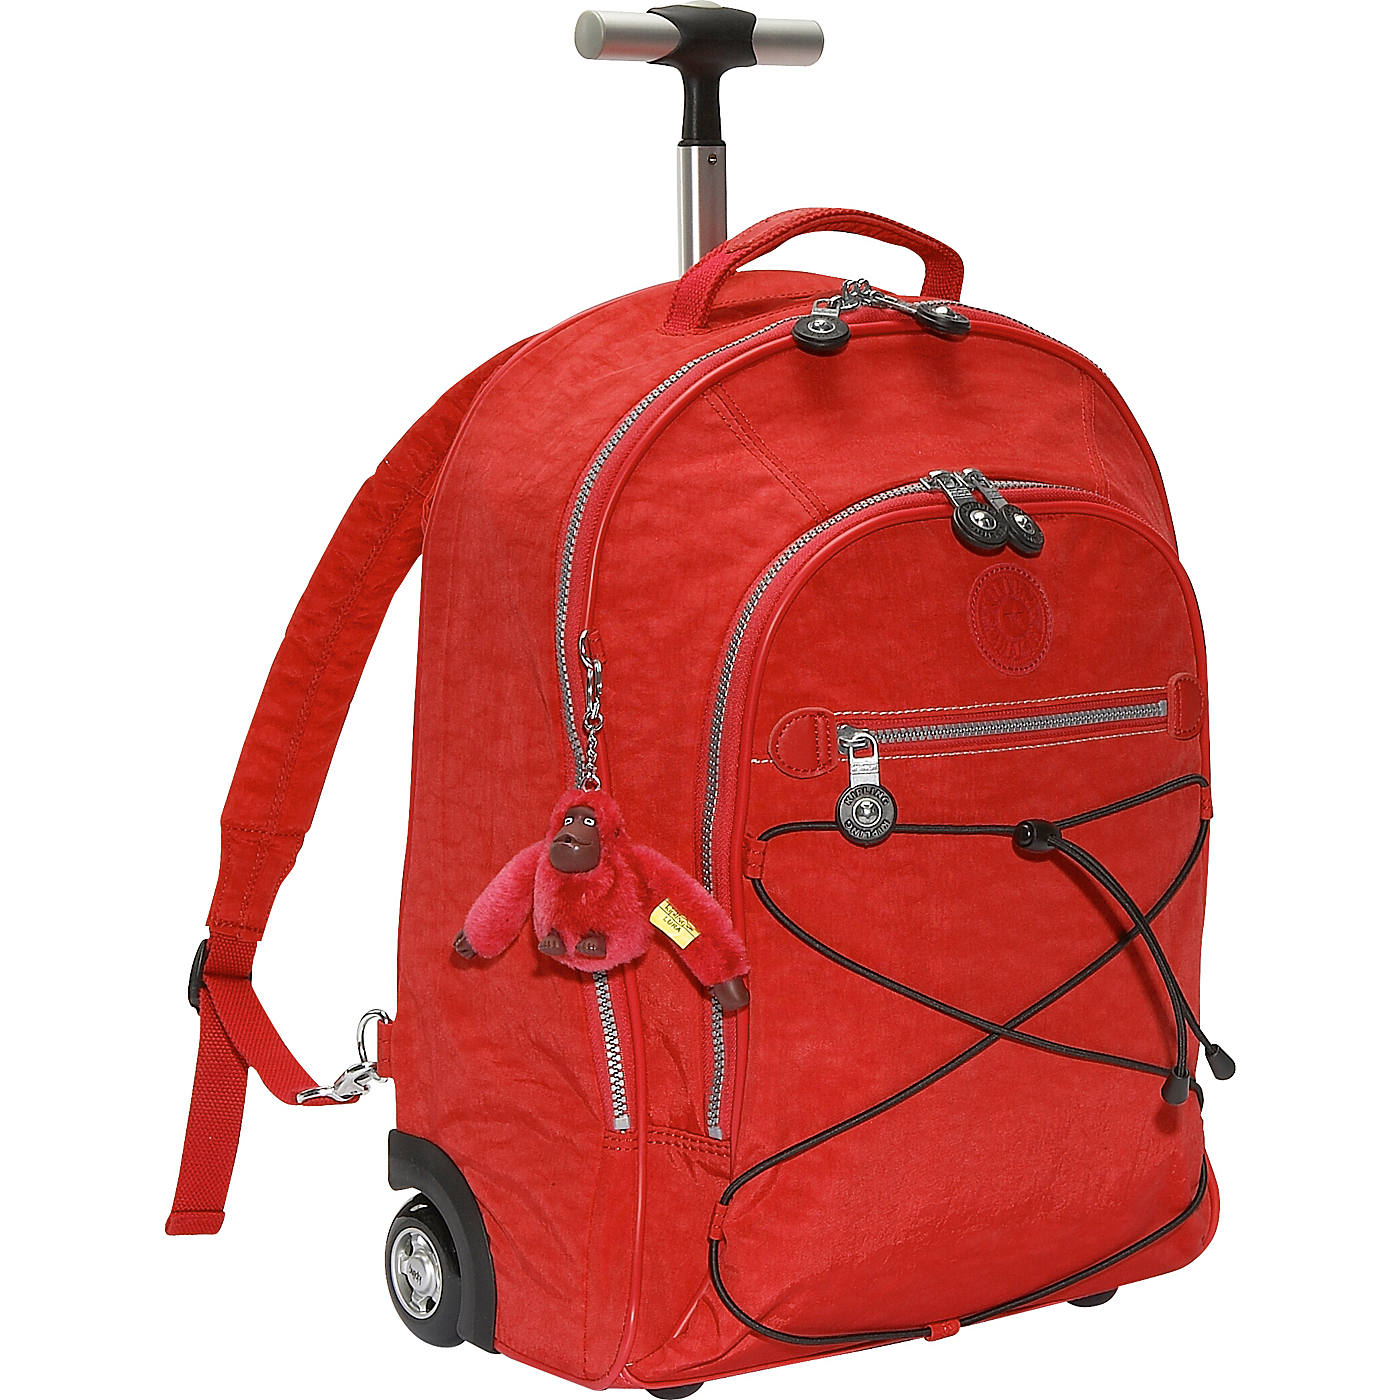 Kipling Sausalito 18 Wheeled Backpack